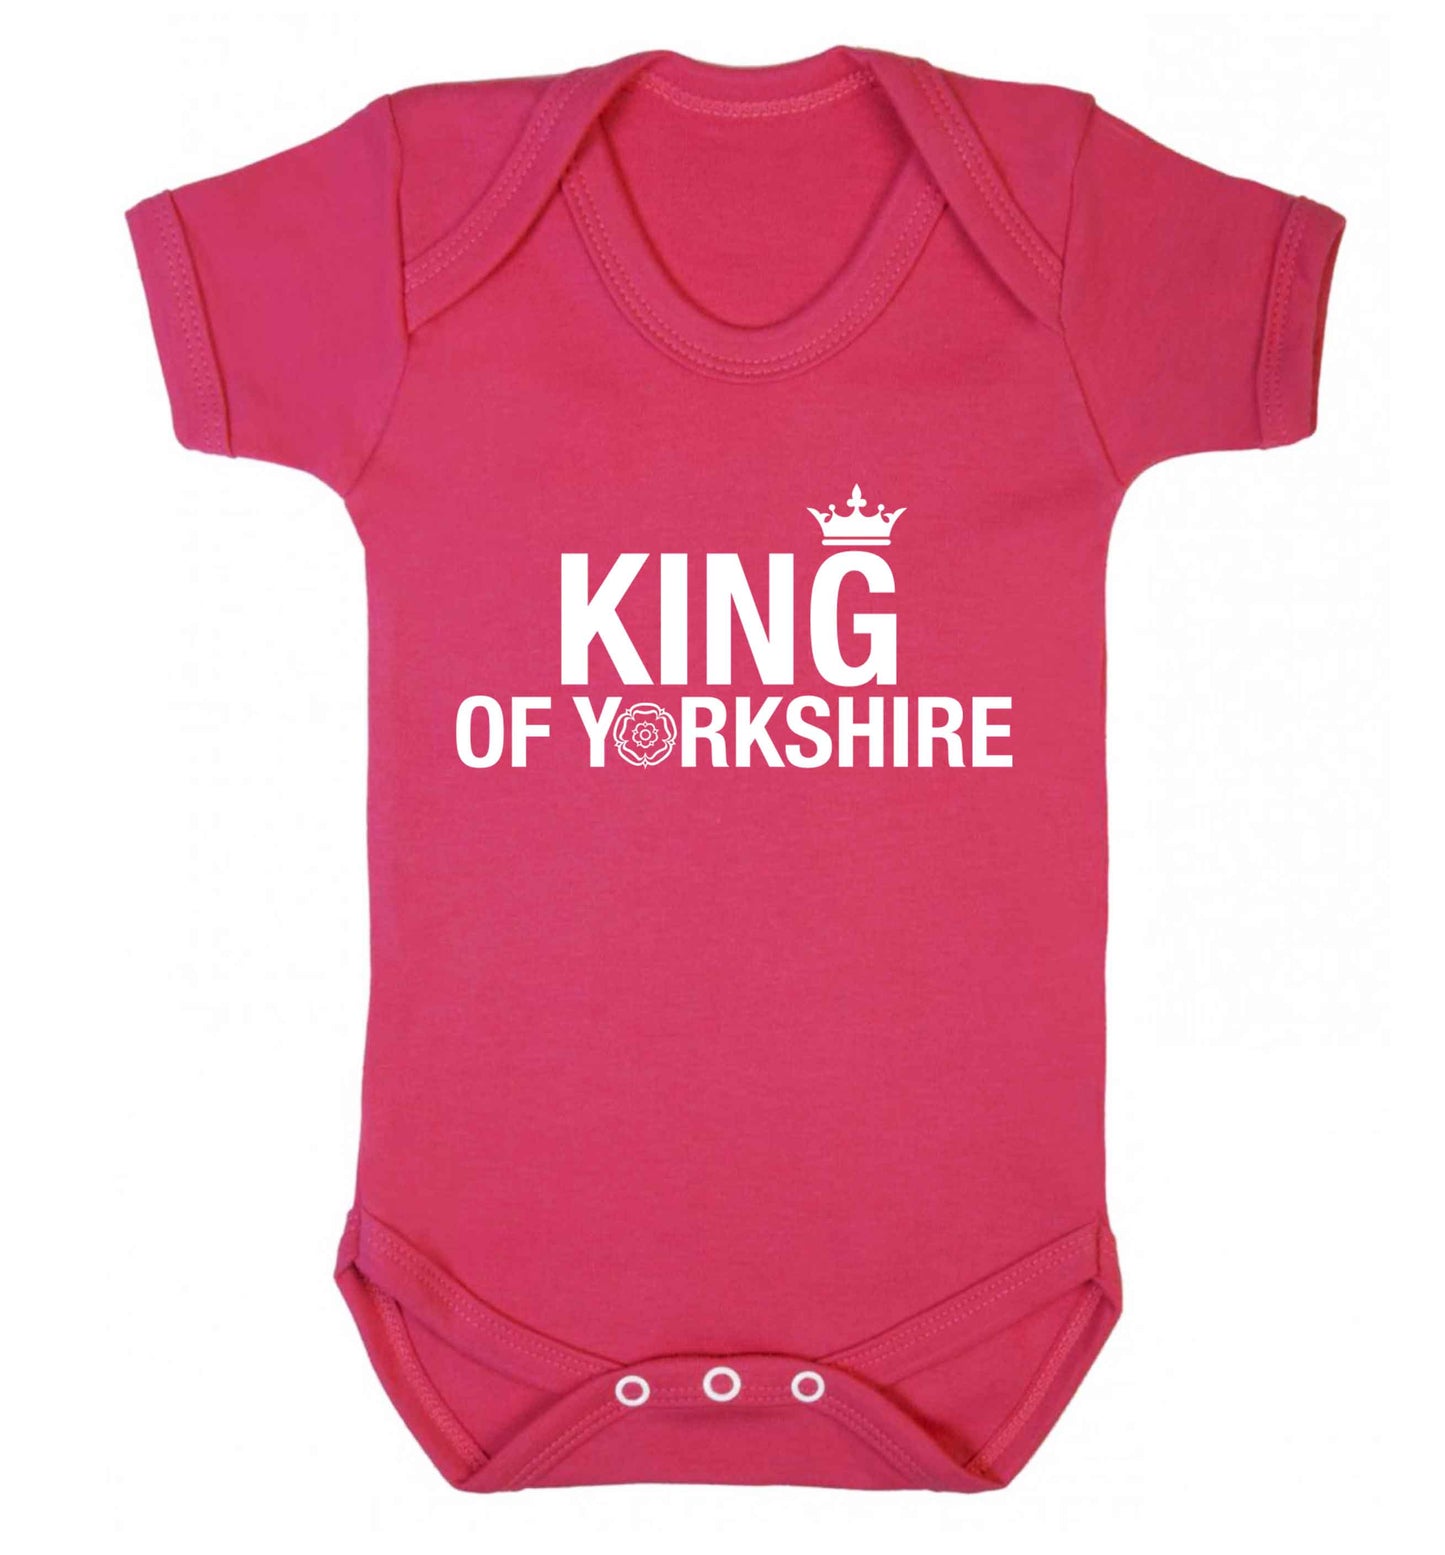 King of Yorkshire Baby Vest dark pink 18-24 months